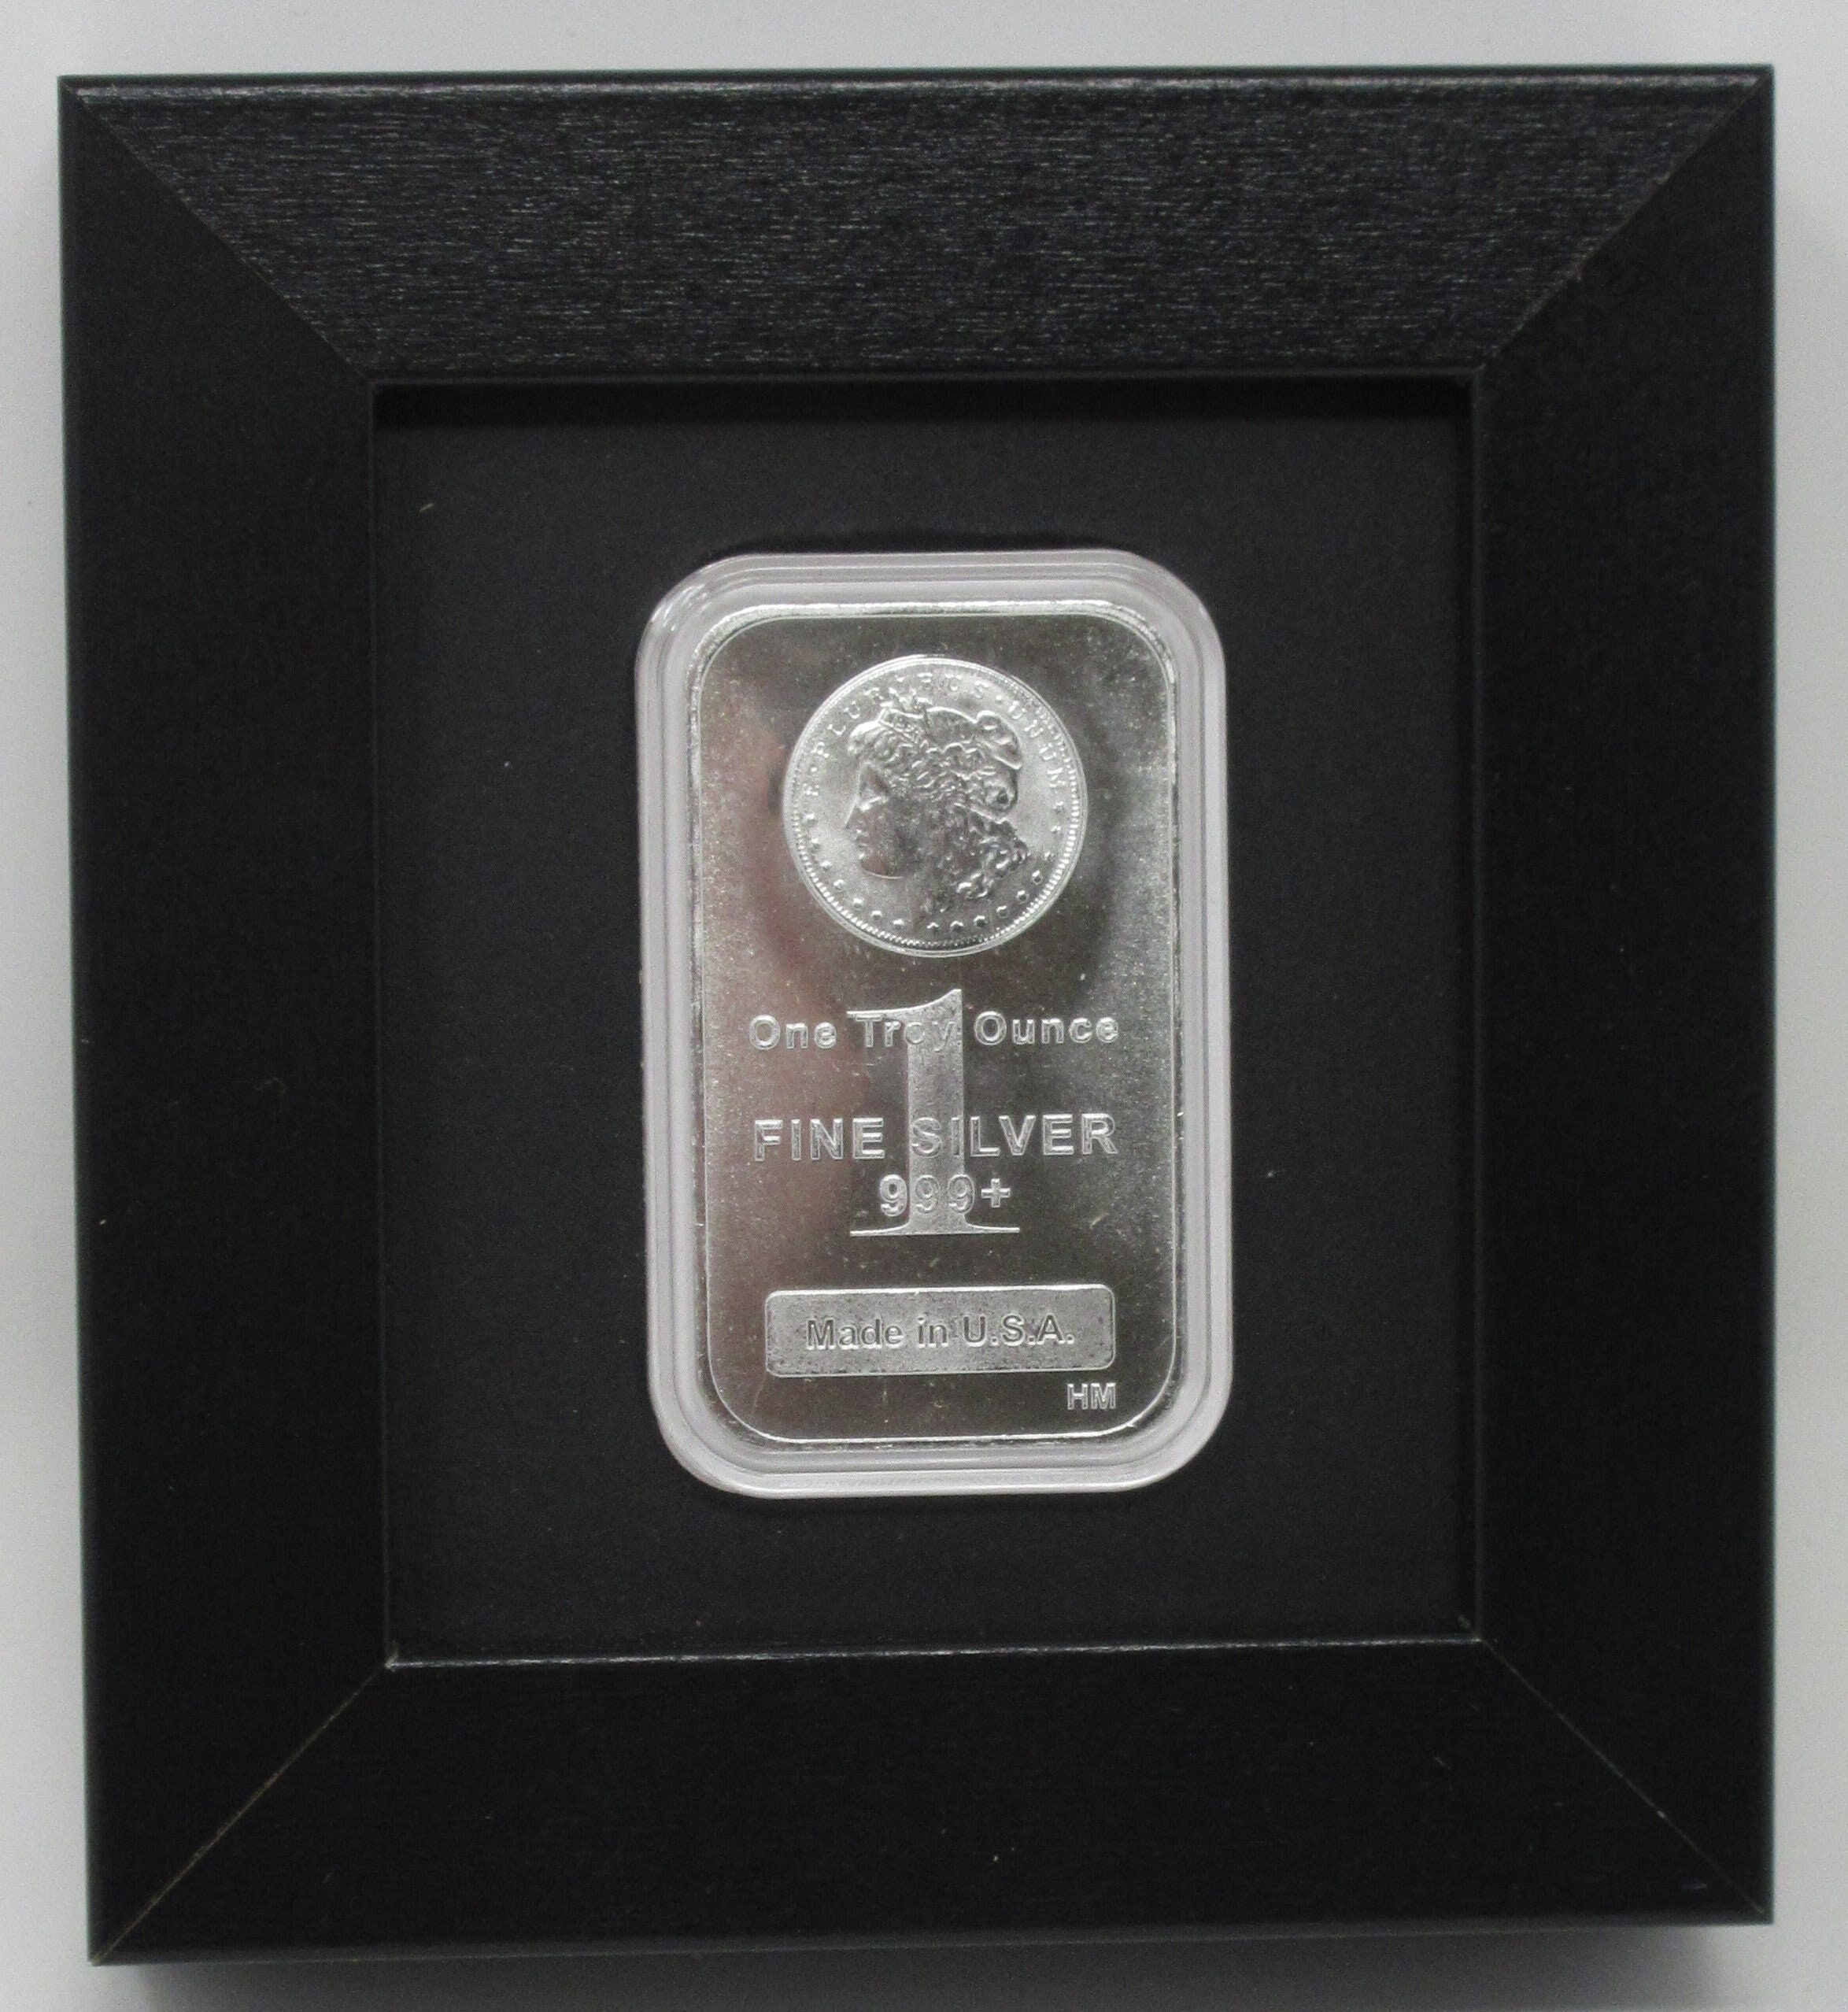 1 oz Silver Rectangle .999 fine- Design our choice - Louisiana Gold & Coins